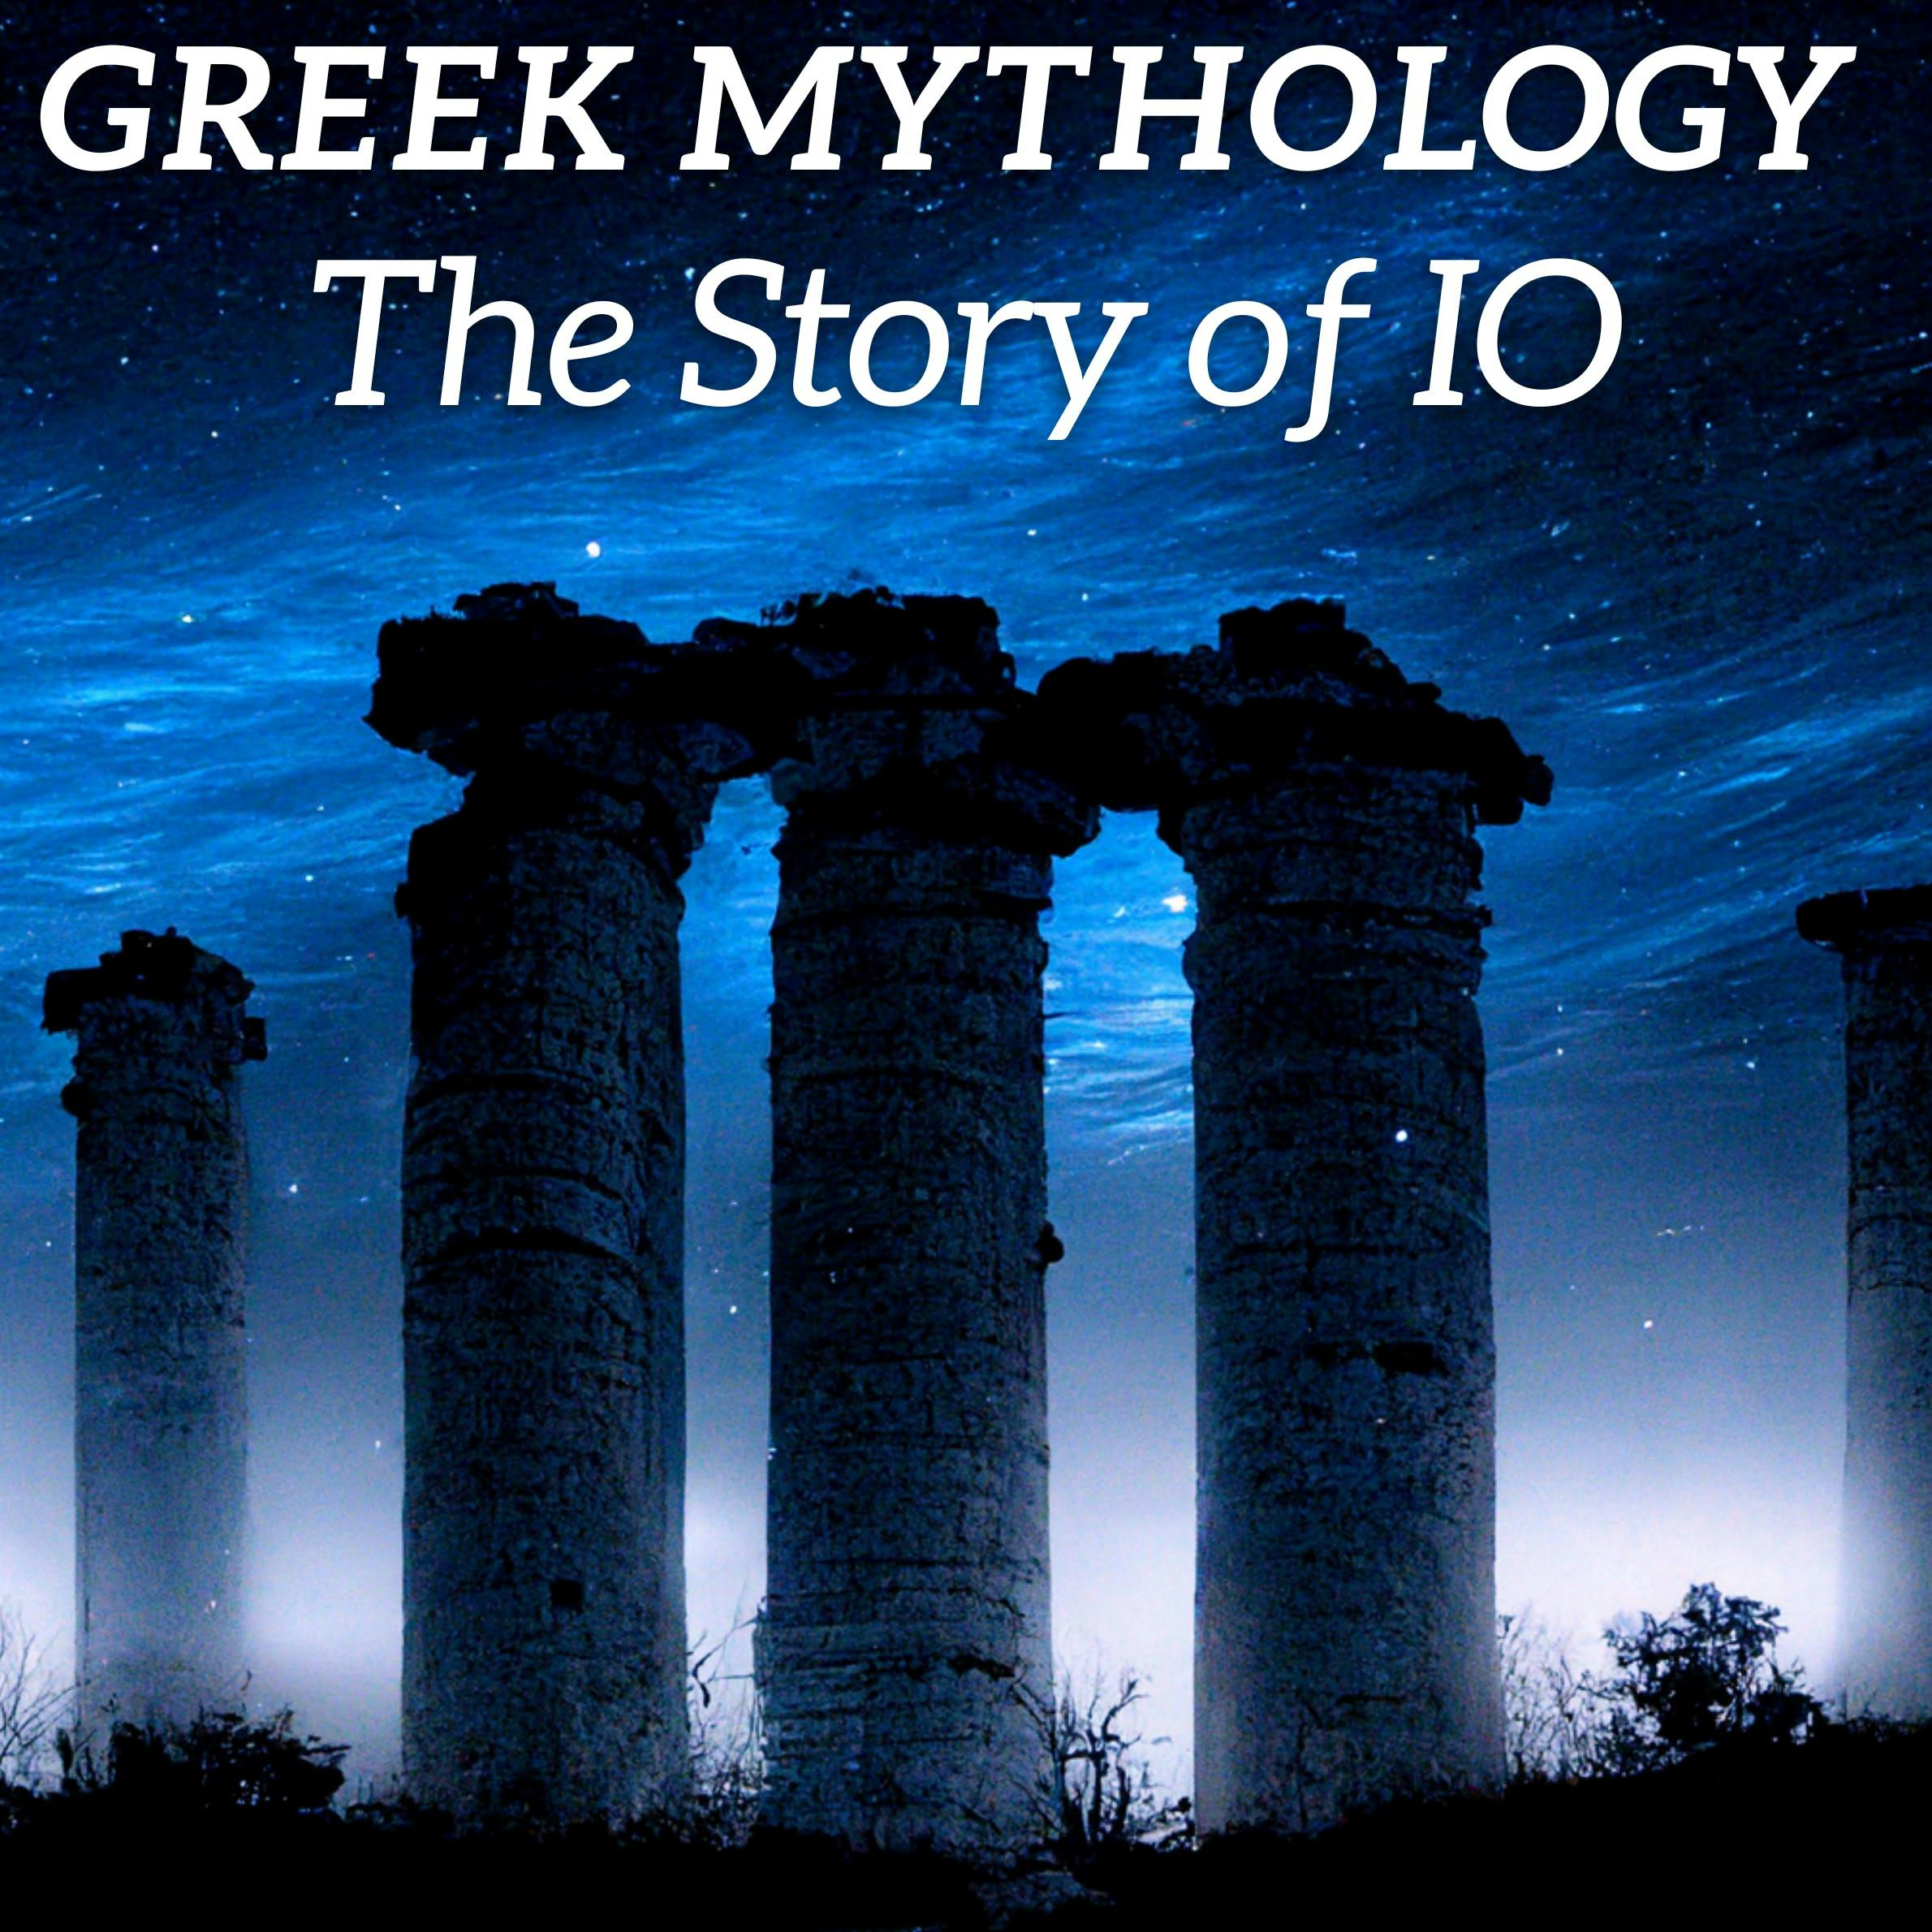 Greek Mythology Bedtime Story - The Story of IO